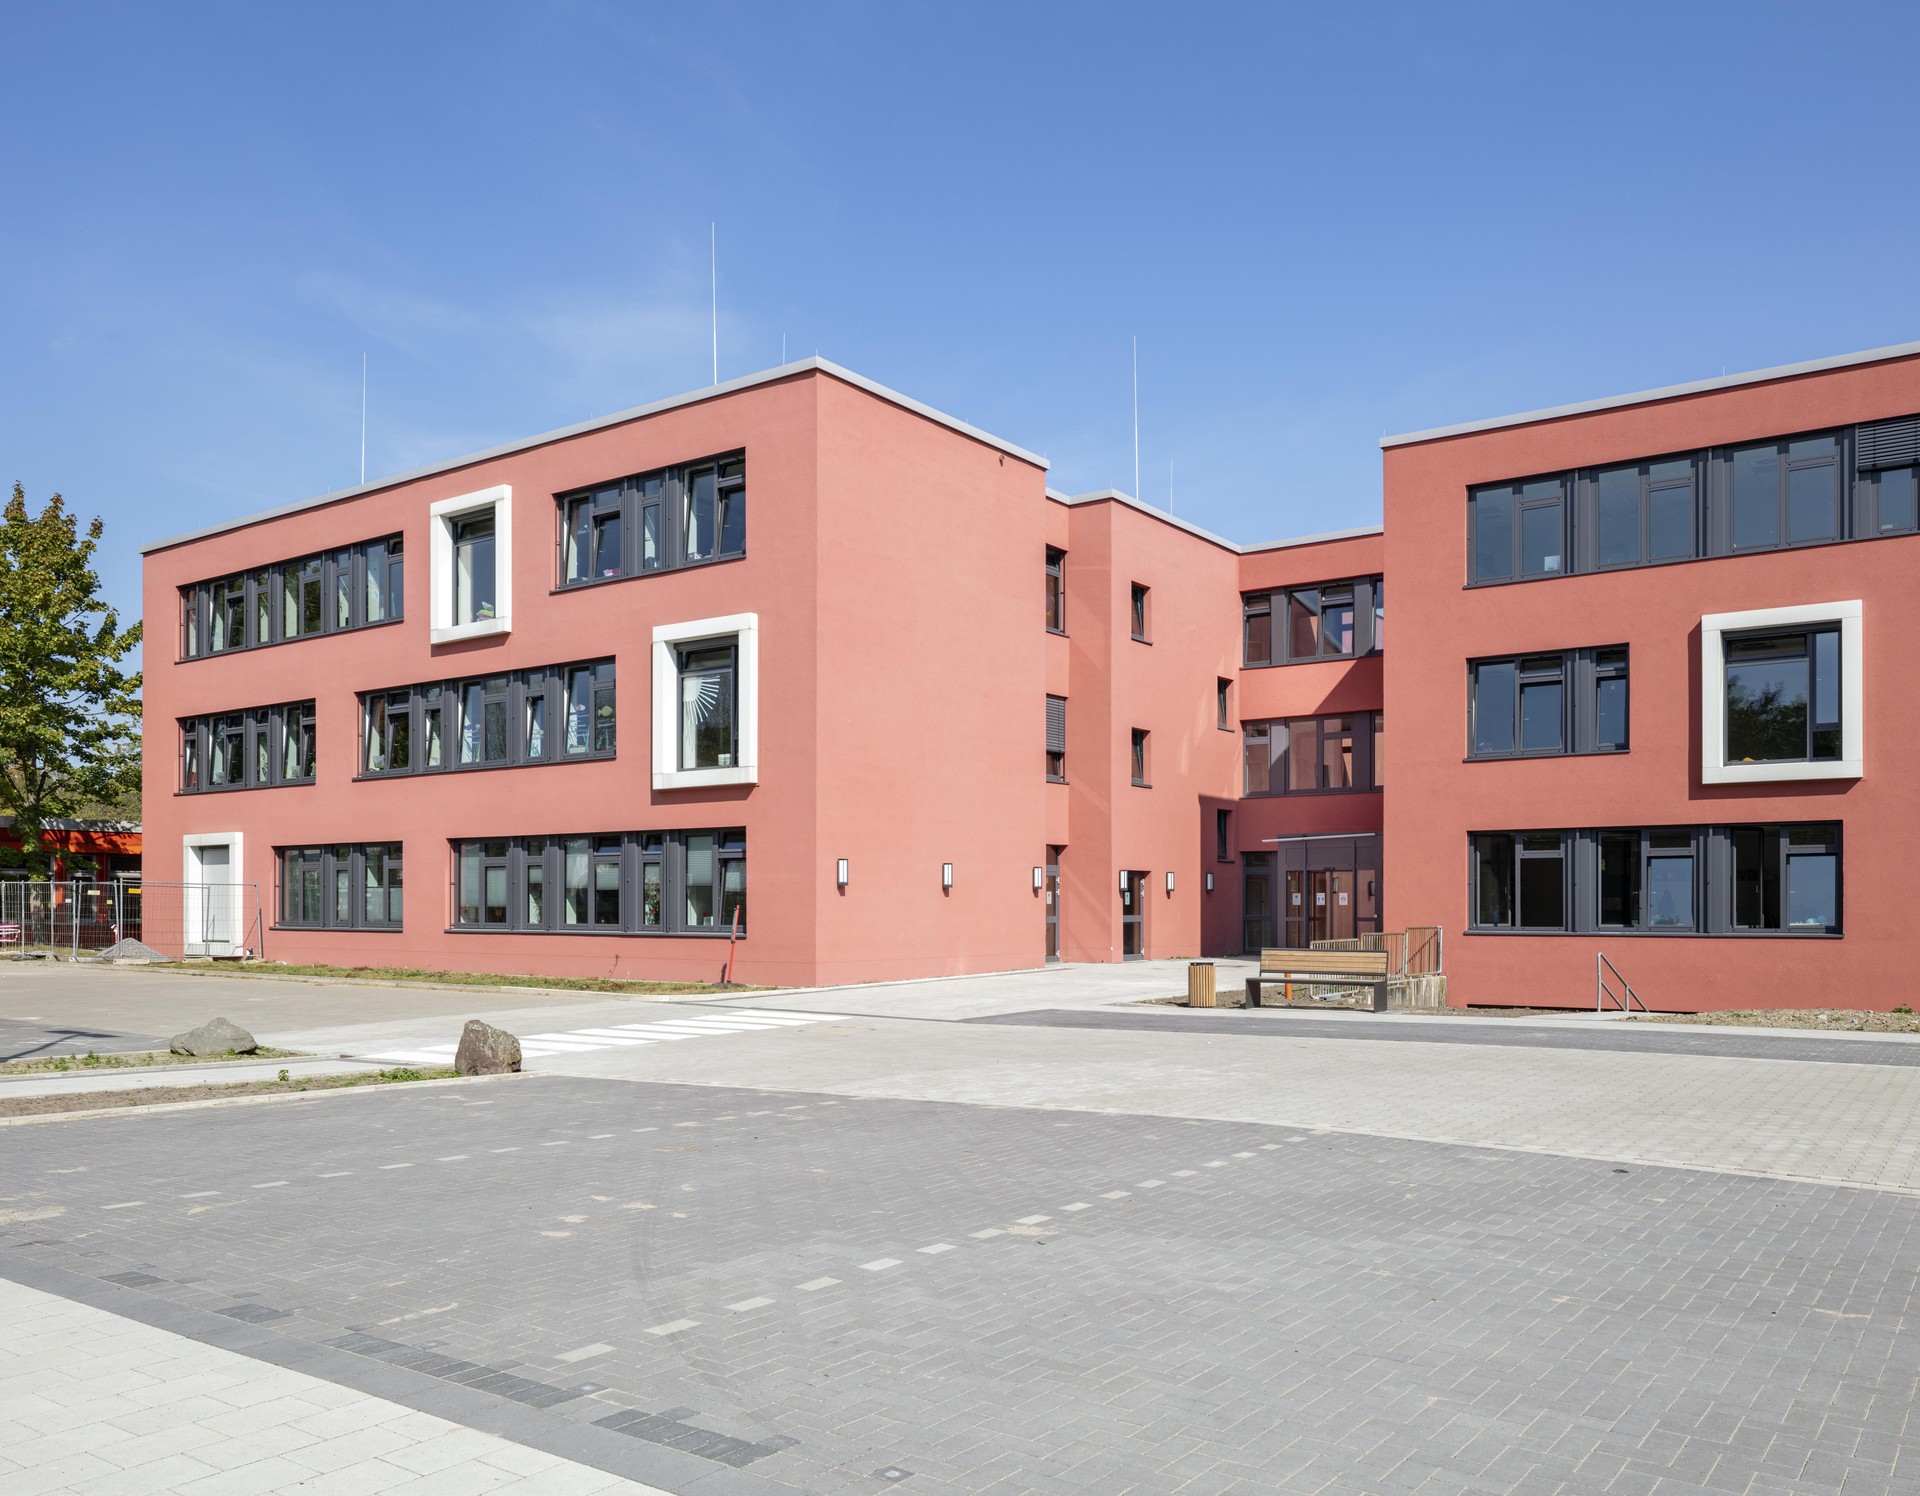 Dortmund, Schule am Marsbruch, südliche Ansicht eines Wohngebäudes.
Bild: PODEHL Fotodesign